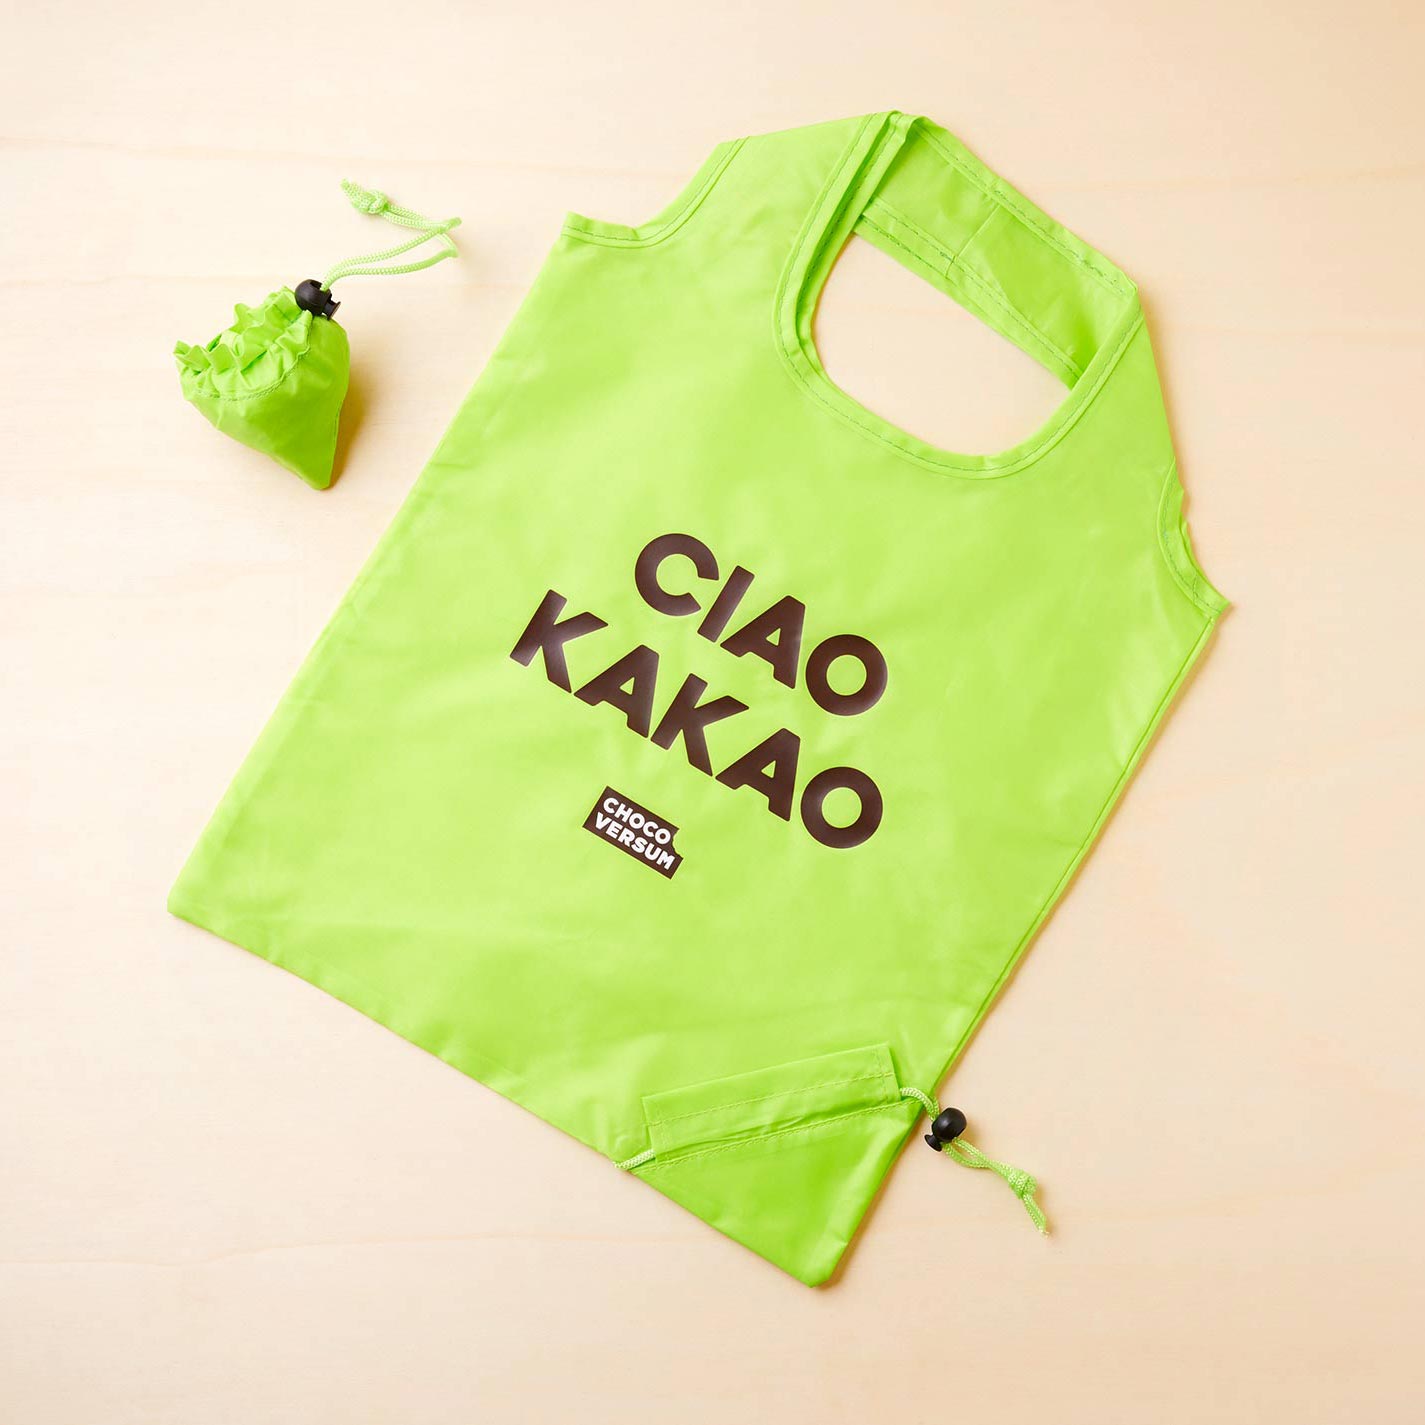 grüner Einkaufsbeutel (zusammenfaltbar) aus Kunststoff mit "Ciao Kakao" Aufdruck in braun und Chocoversum Logo